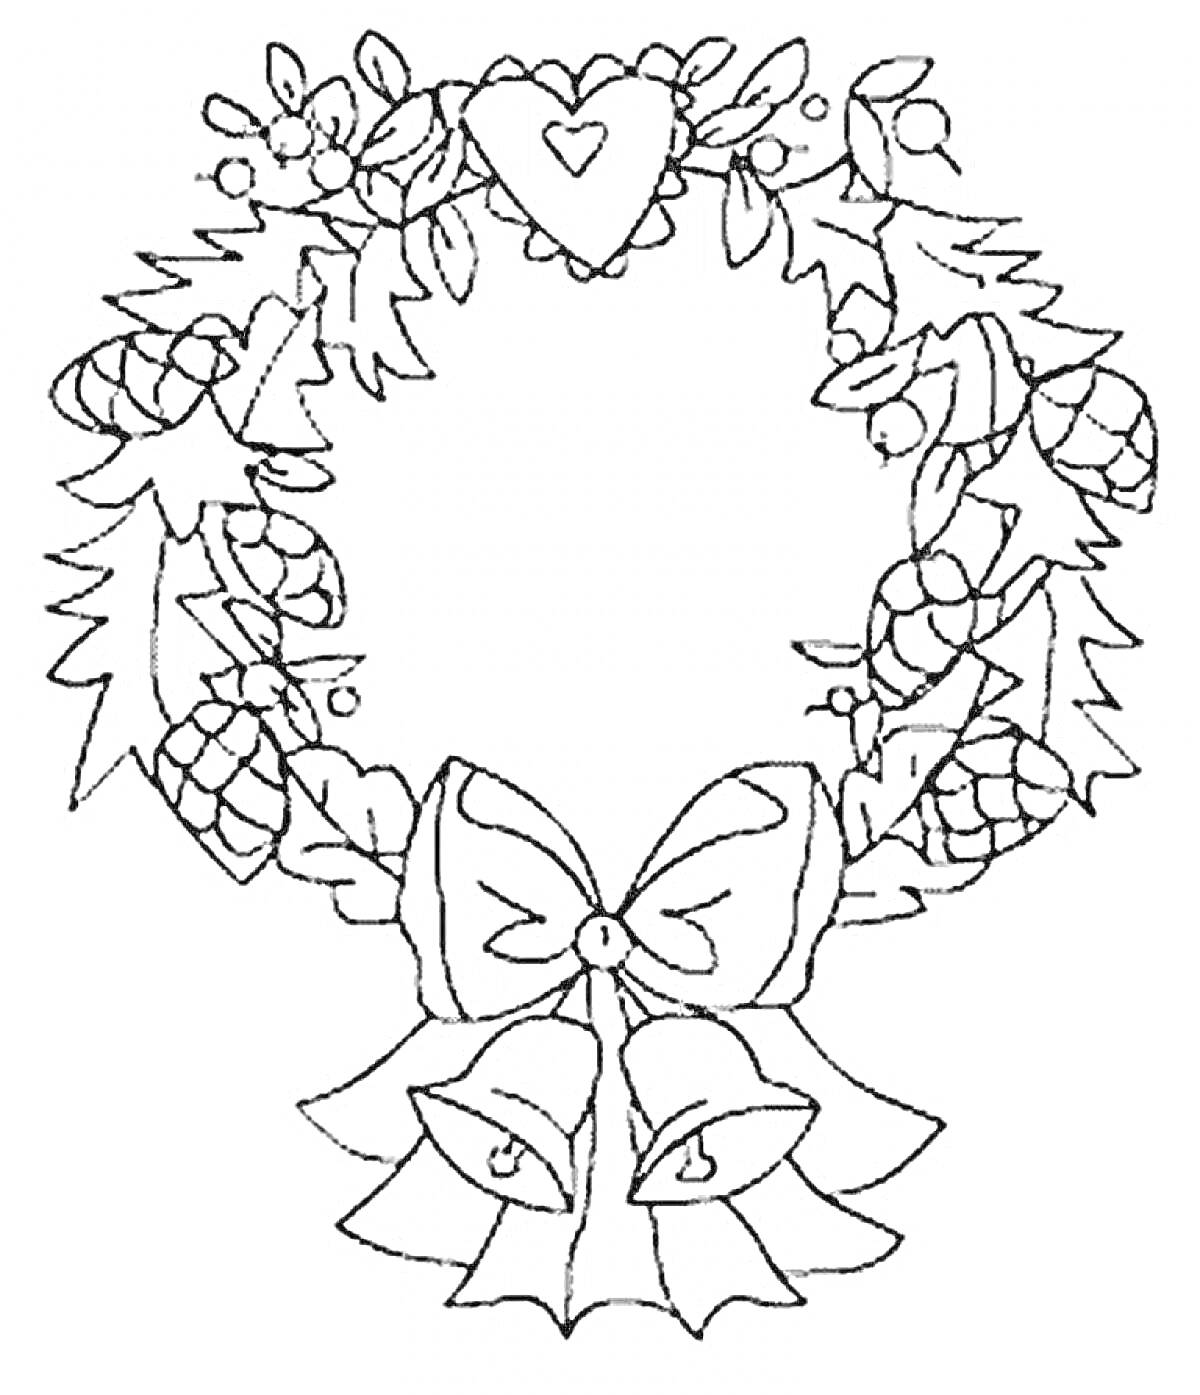 Раскраска Венок с сердцем, шишками, листьями, ягодами, бантом и колокольчиками